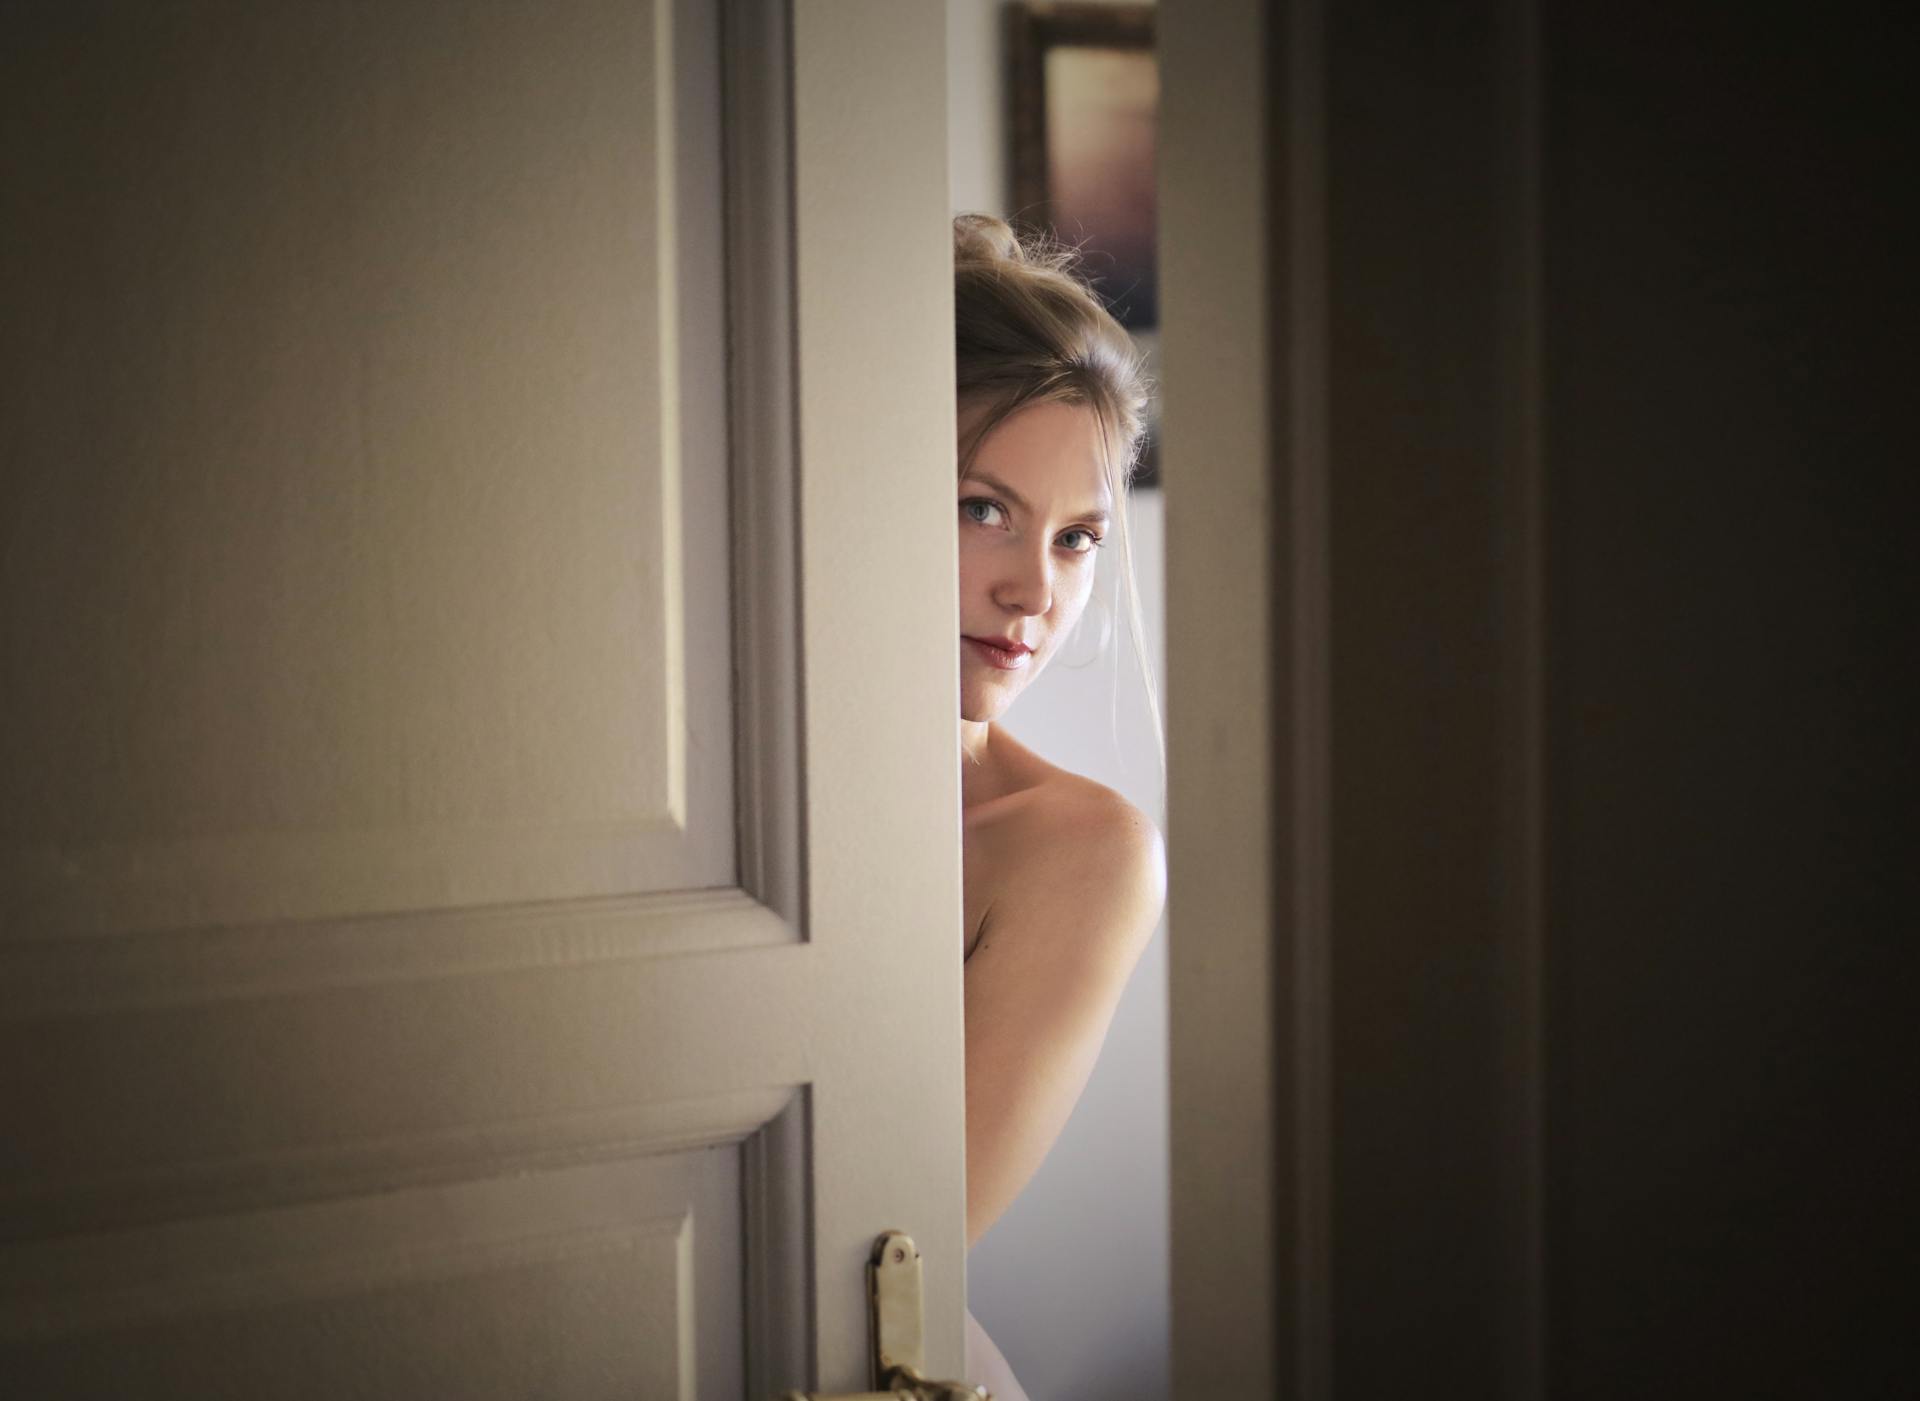 Eine Frau lugt hinter der Tür hervor | Quelle: Pexels